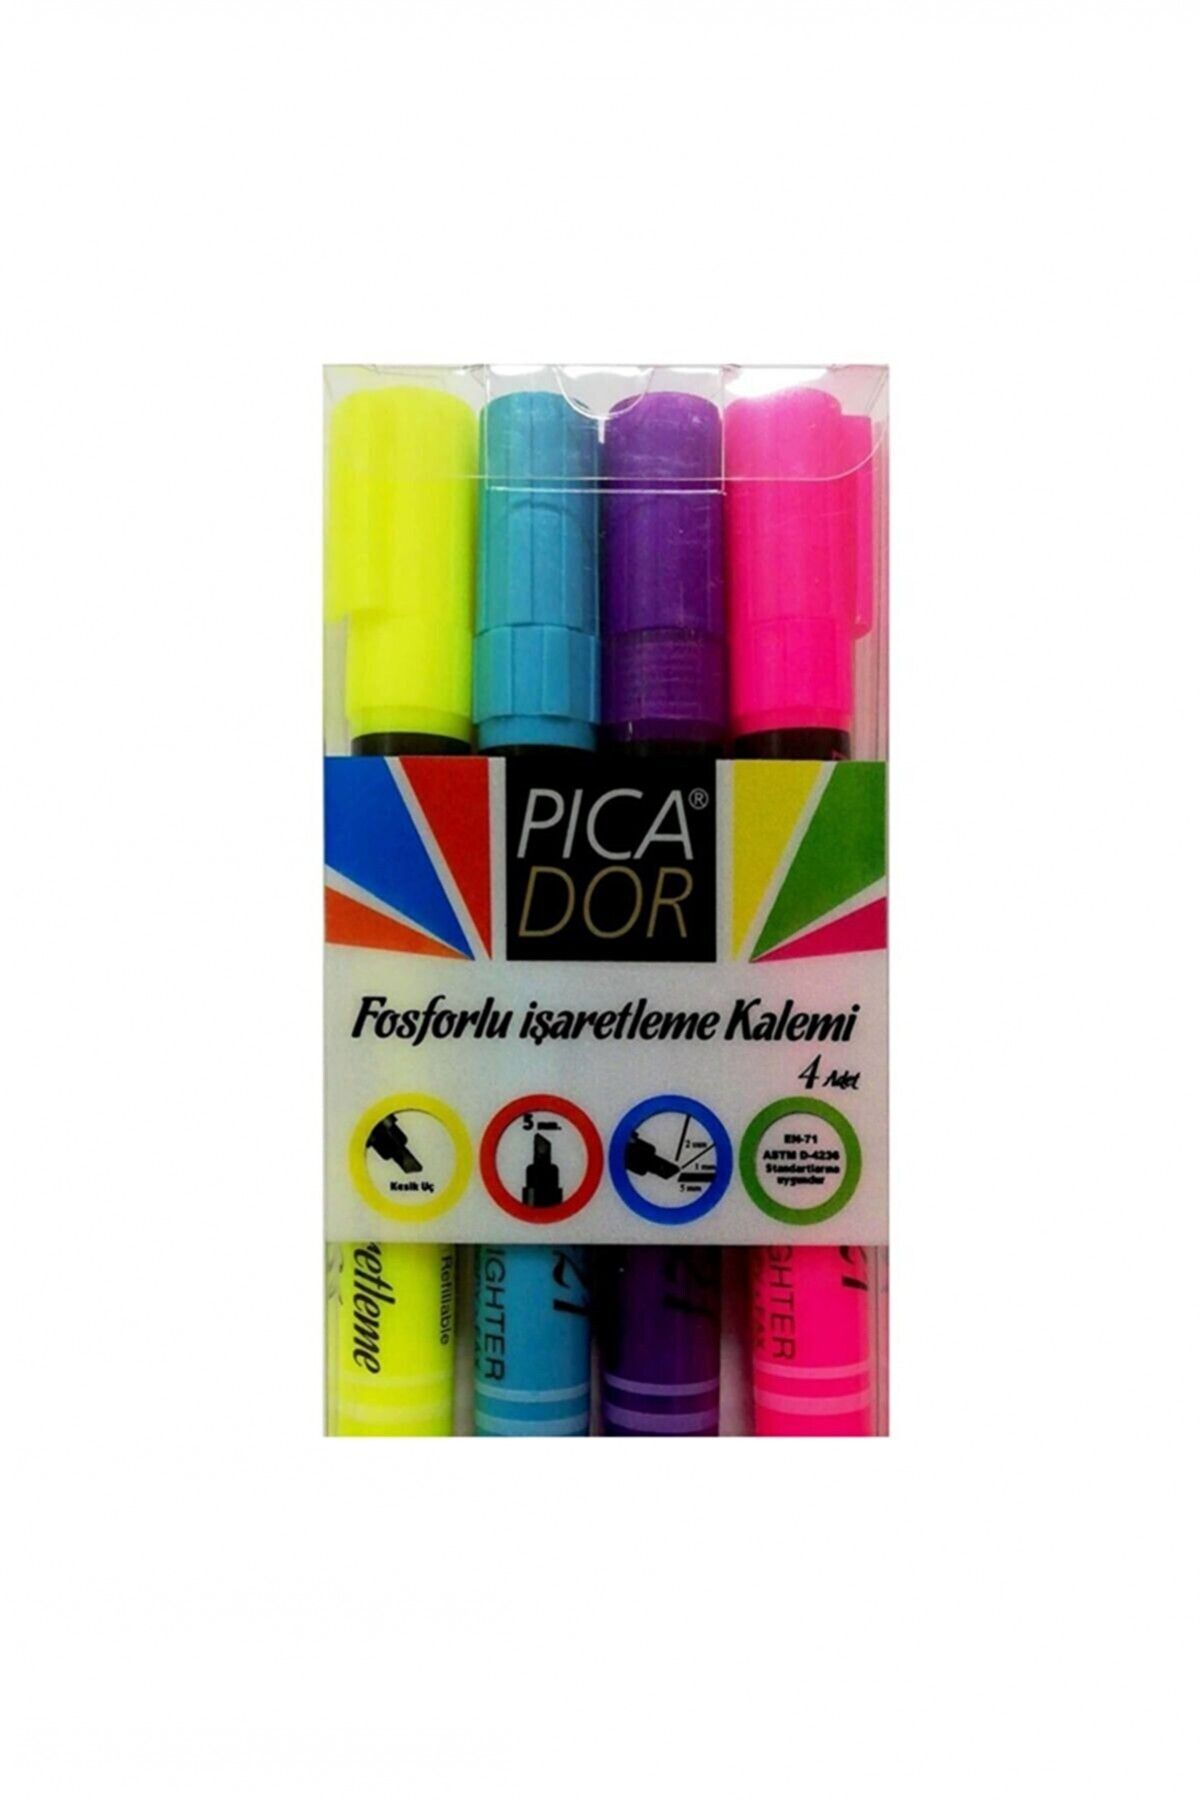 Picador Sedko Fosforlu Kalem Karışık Renk 4'lü Set